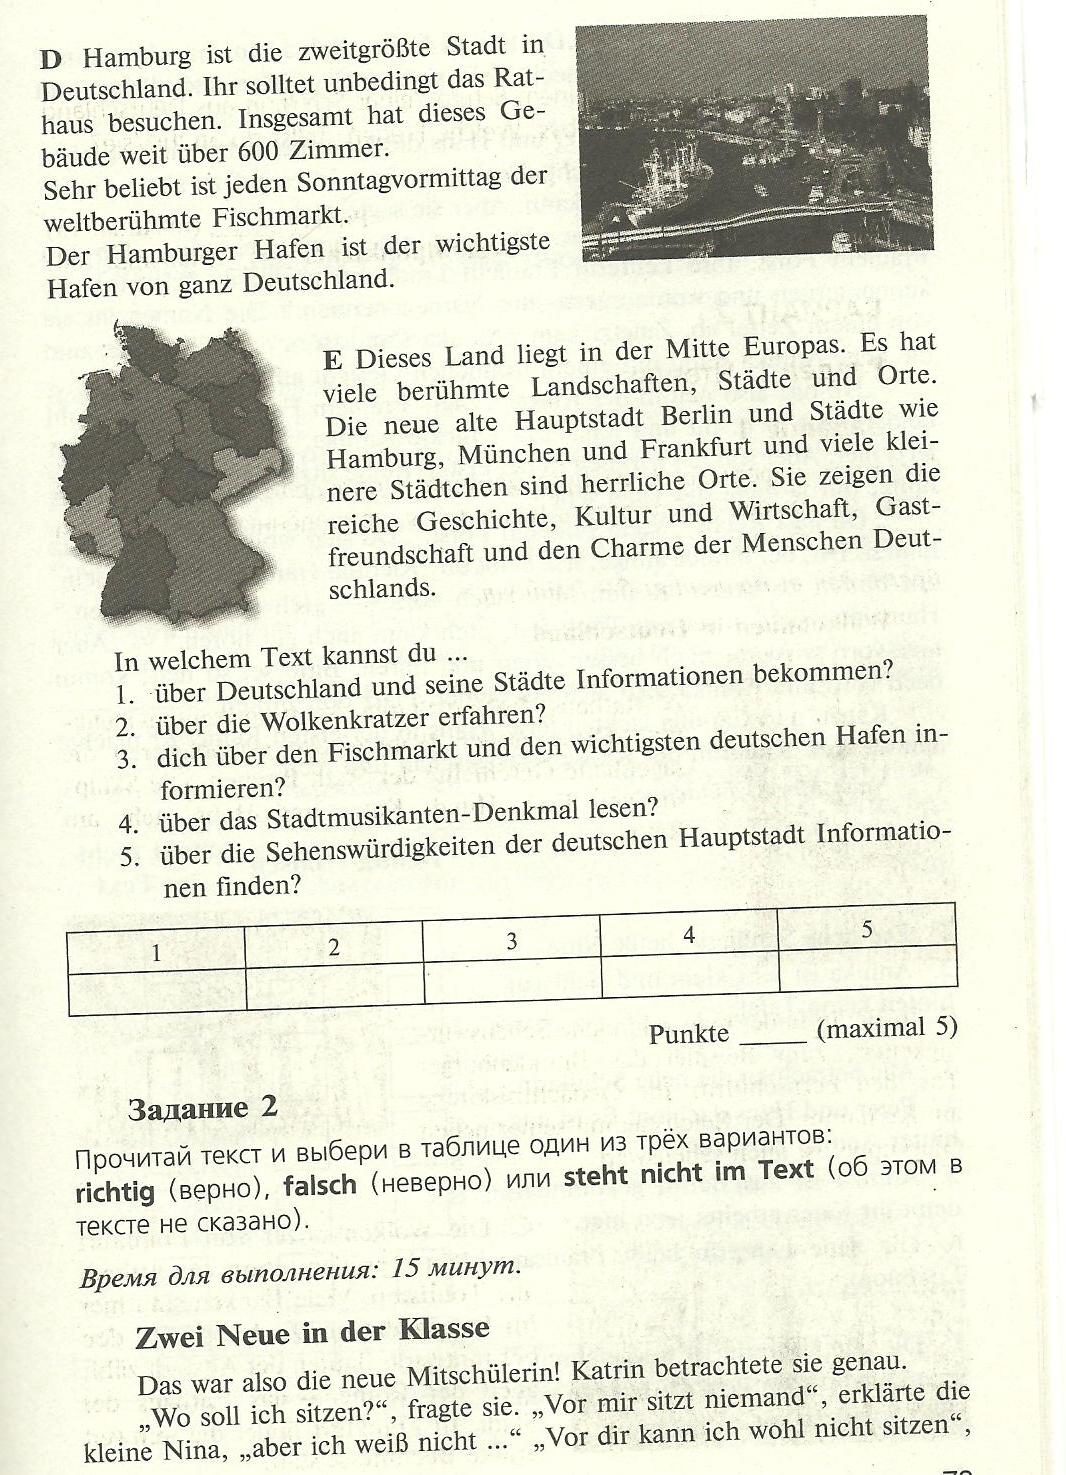 Рабочая программа немецкий язык 6 класс